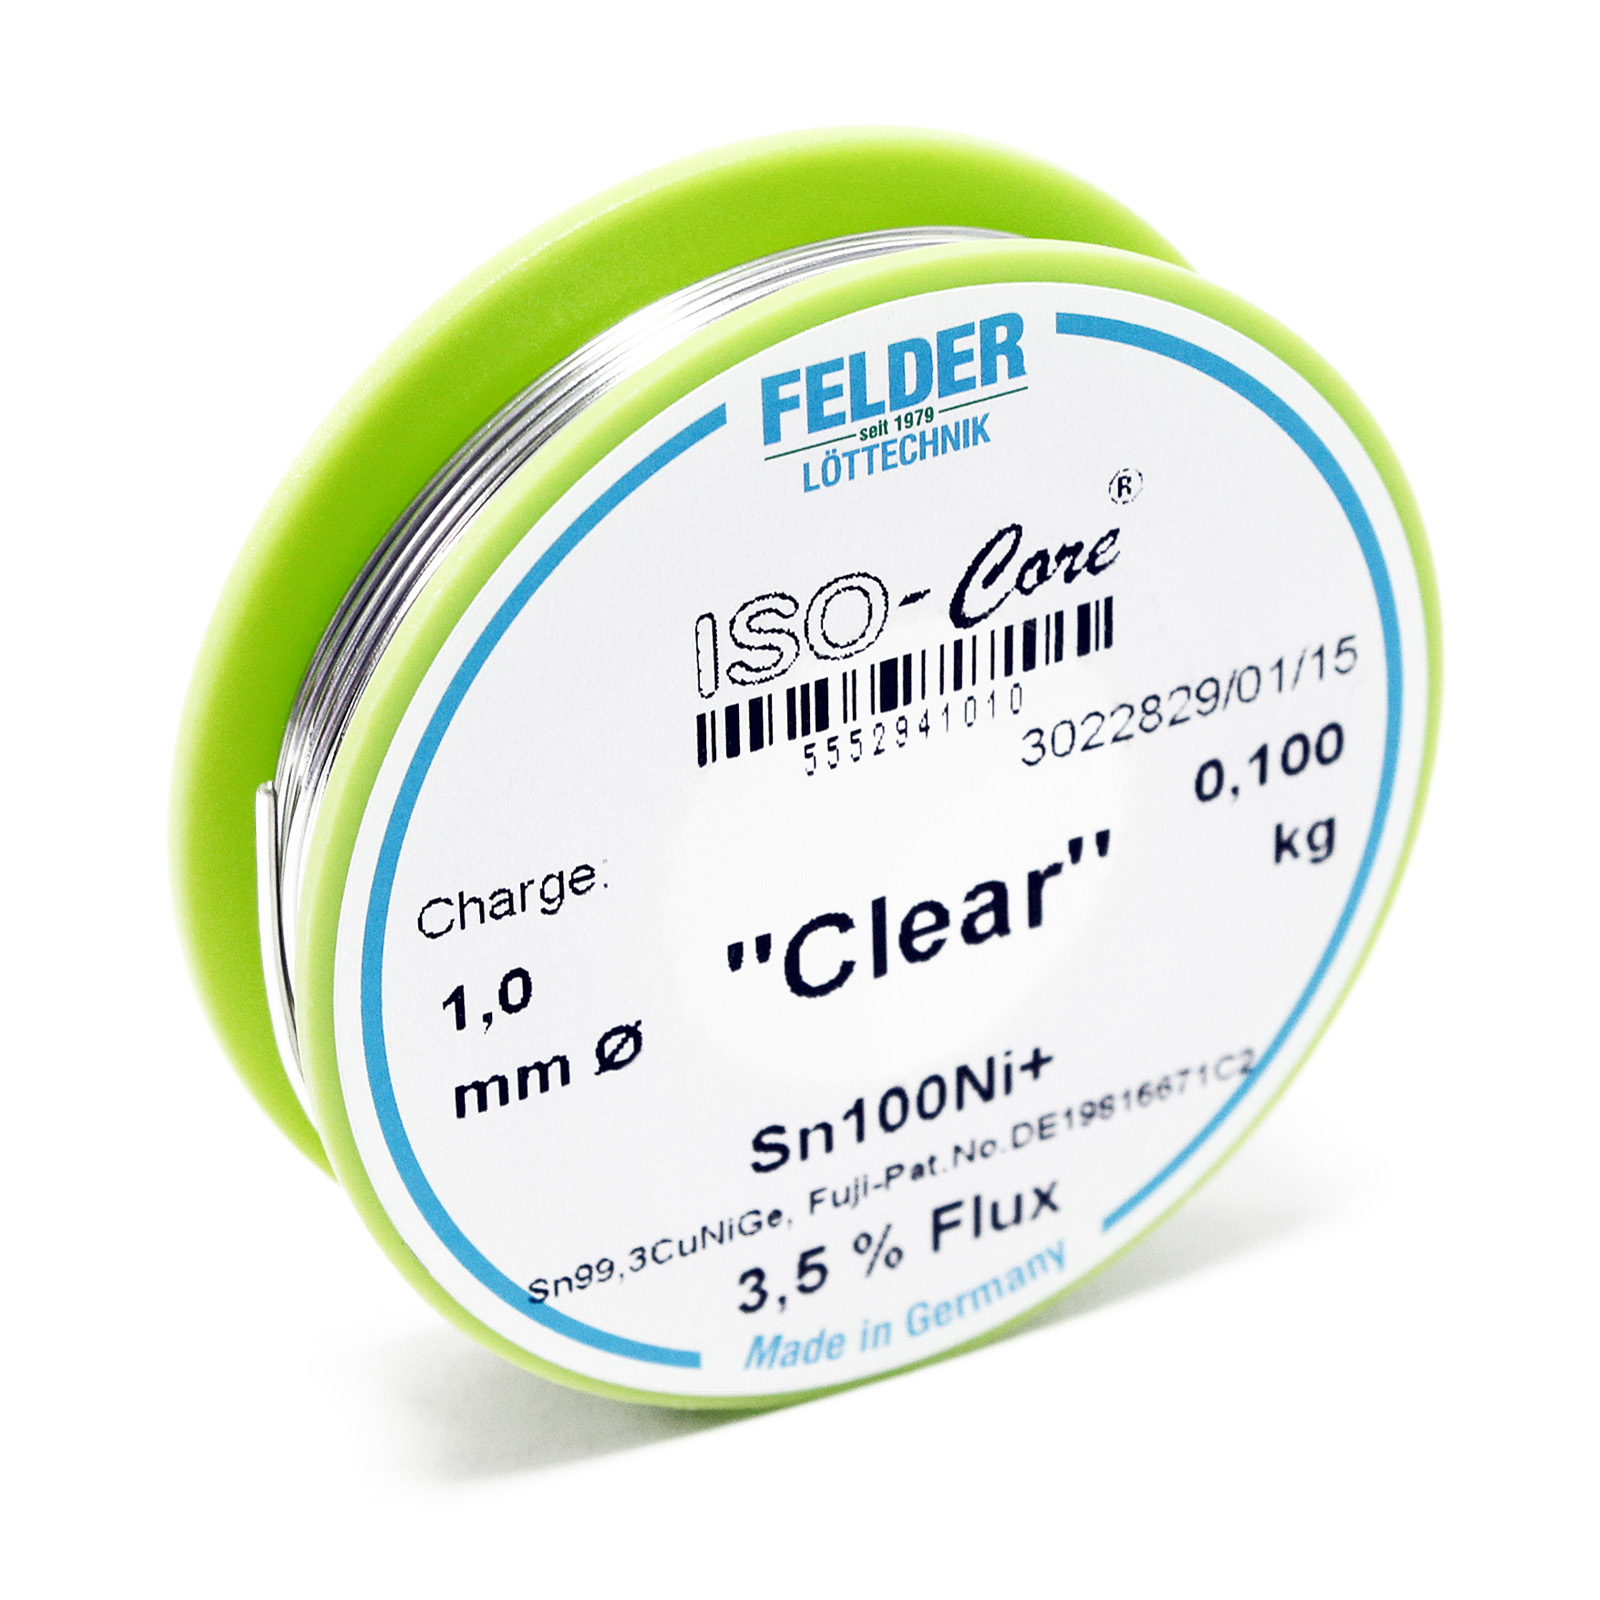 Felder Lötdraht ISO-Core "Clear" Sn100Ni+ Sn99,3CuNiGe 1.0mm 0.1kg